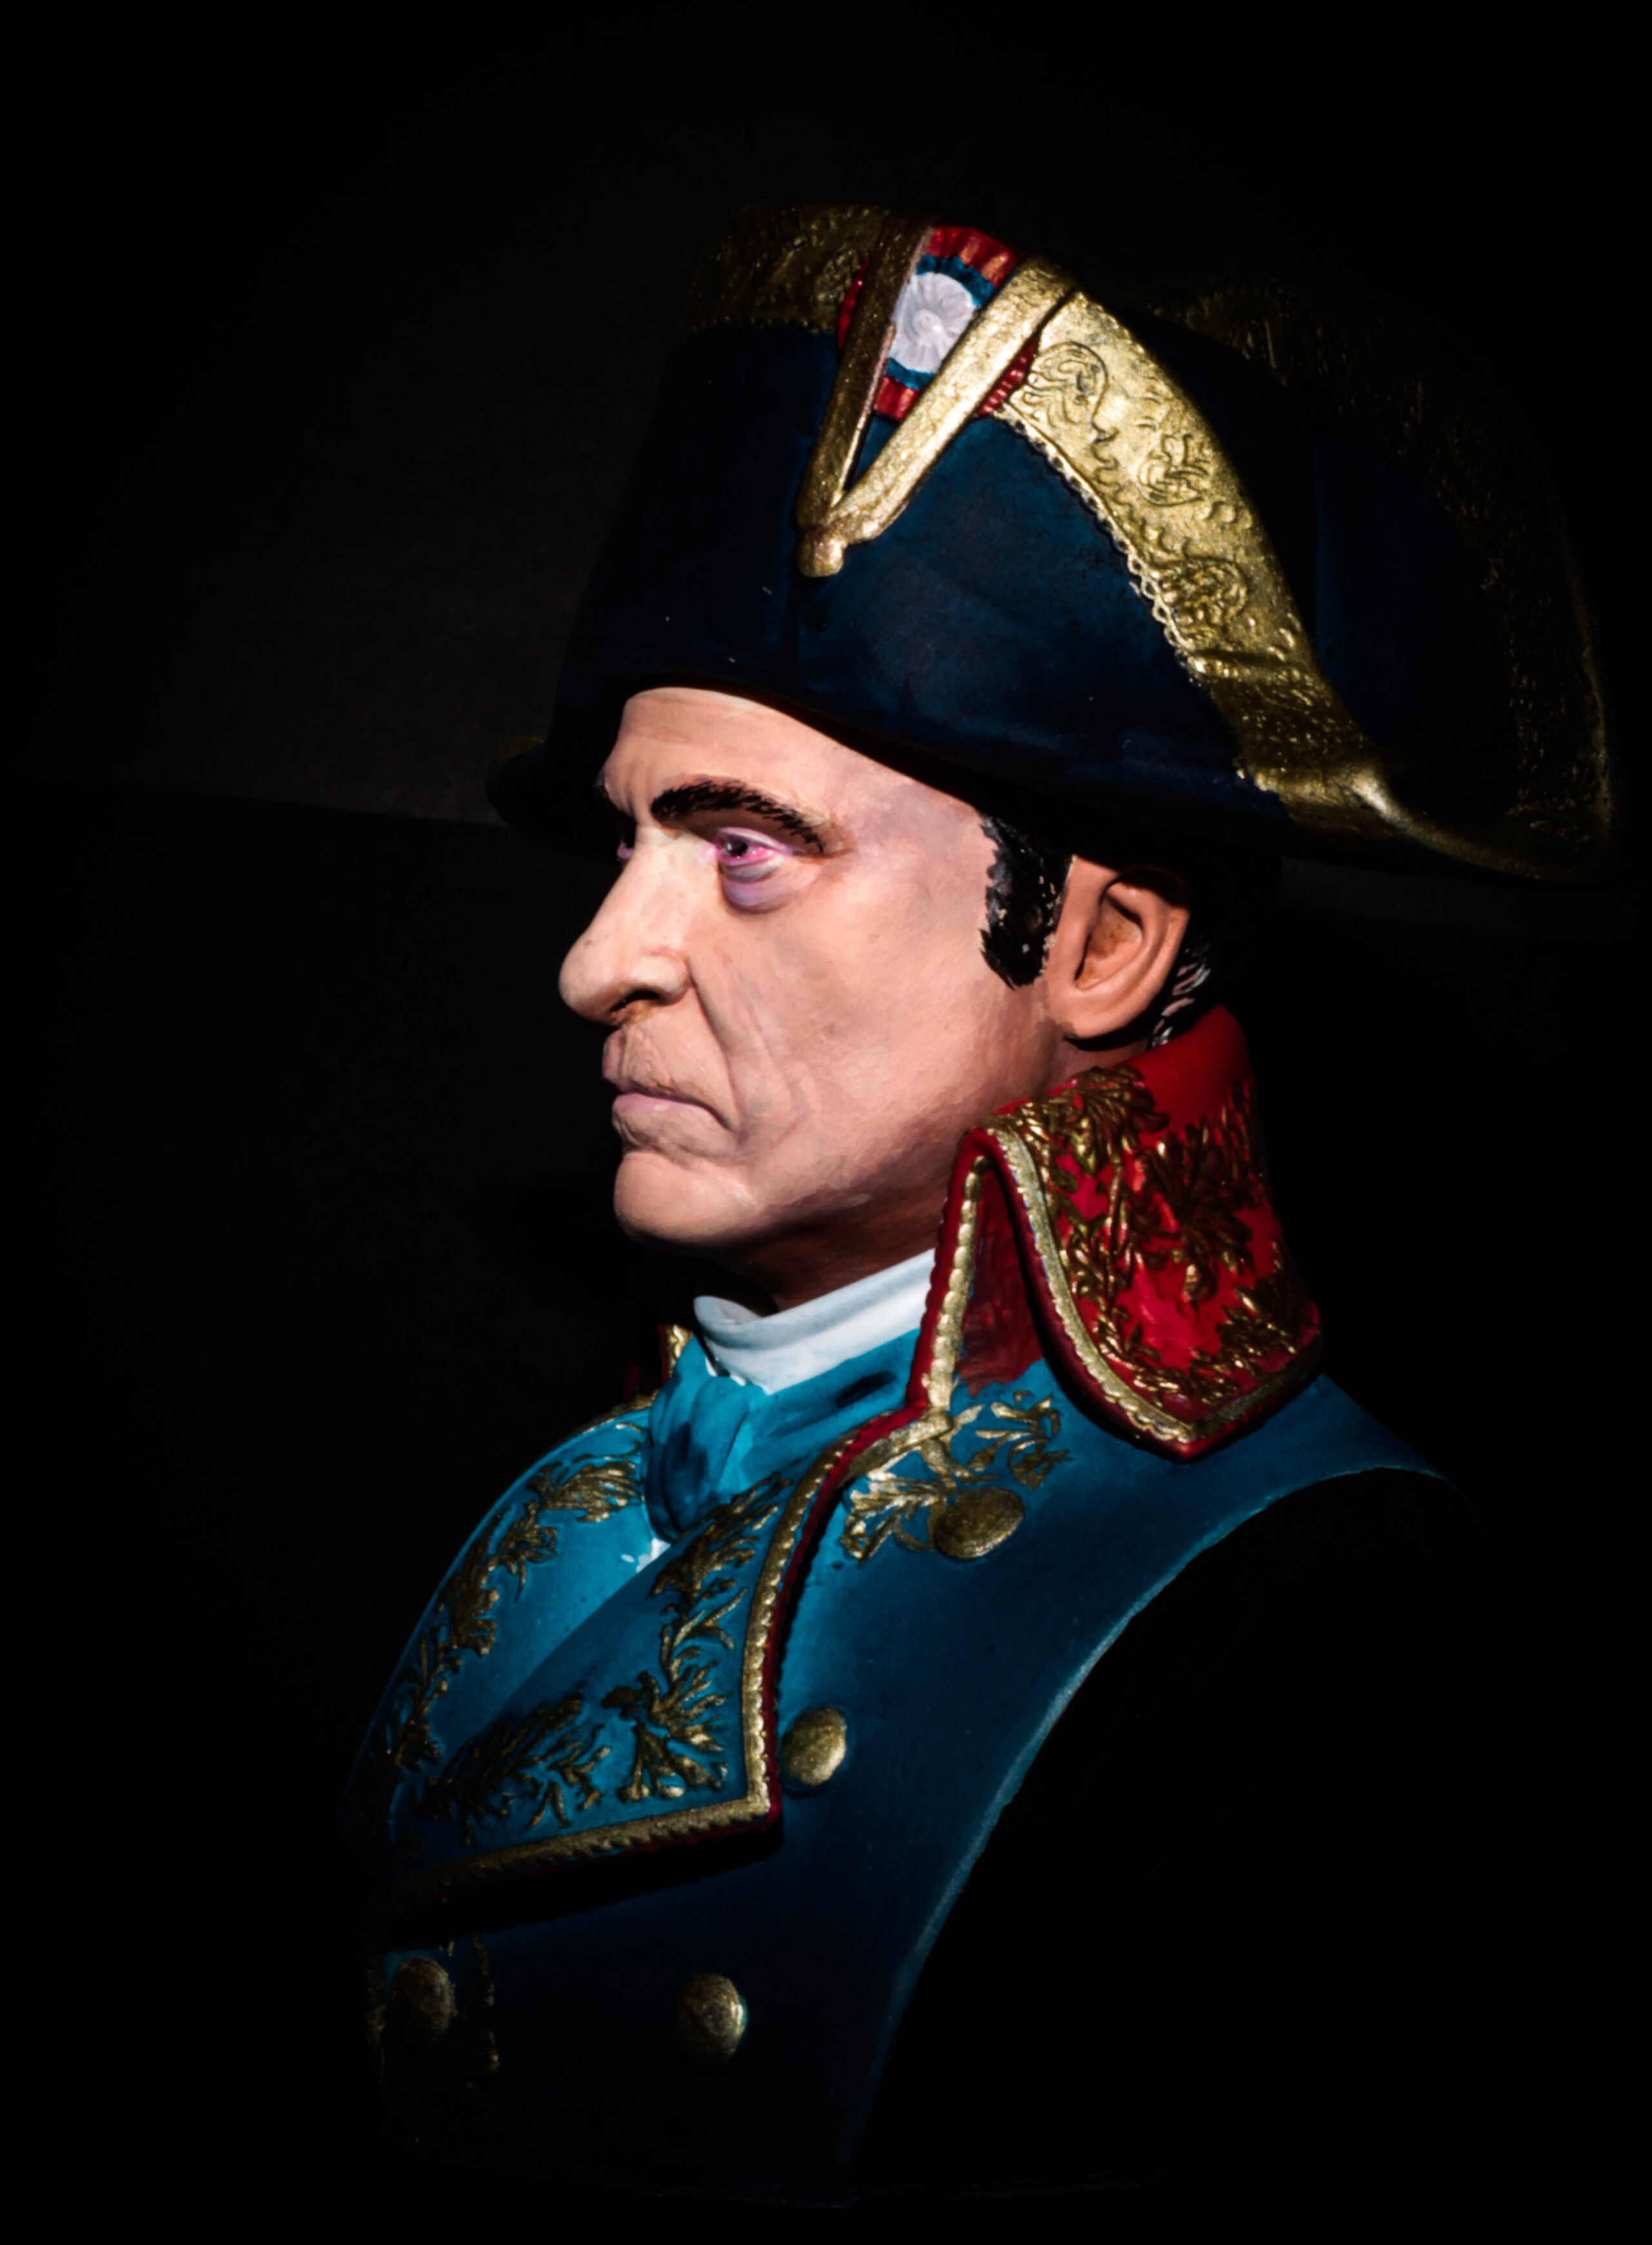 Buste de Joaquim Phoenix dans le prochain rôle de Napoleon resine 3d. Img_0611